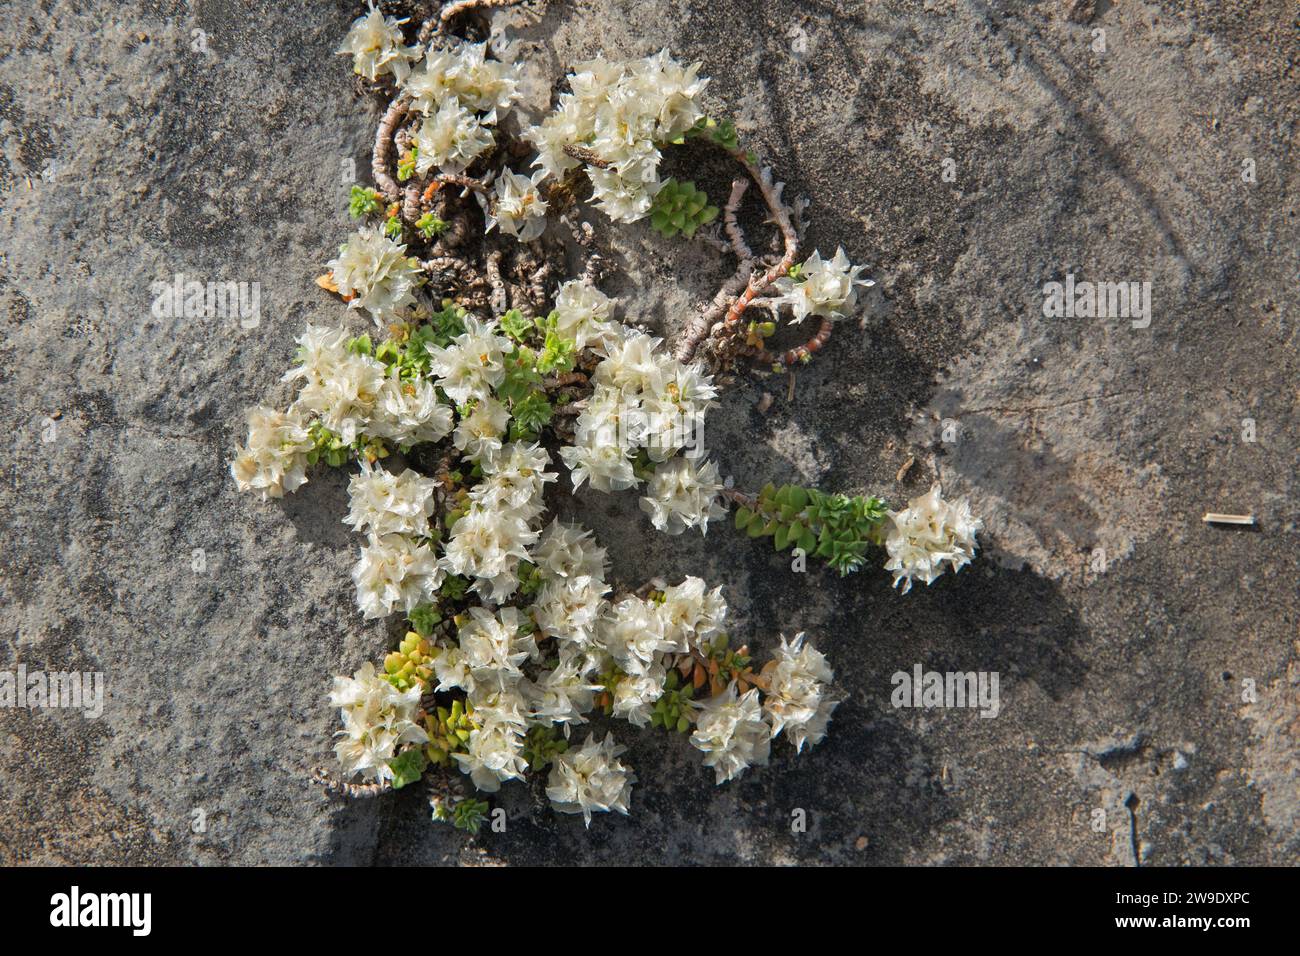 Nailwort, Paronychia kapela, small white flowers growing on a rock Stock Photo